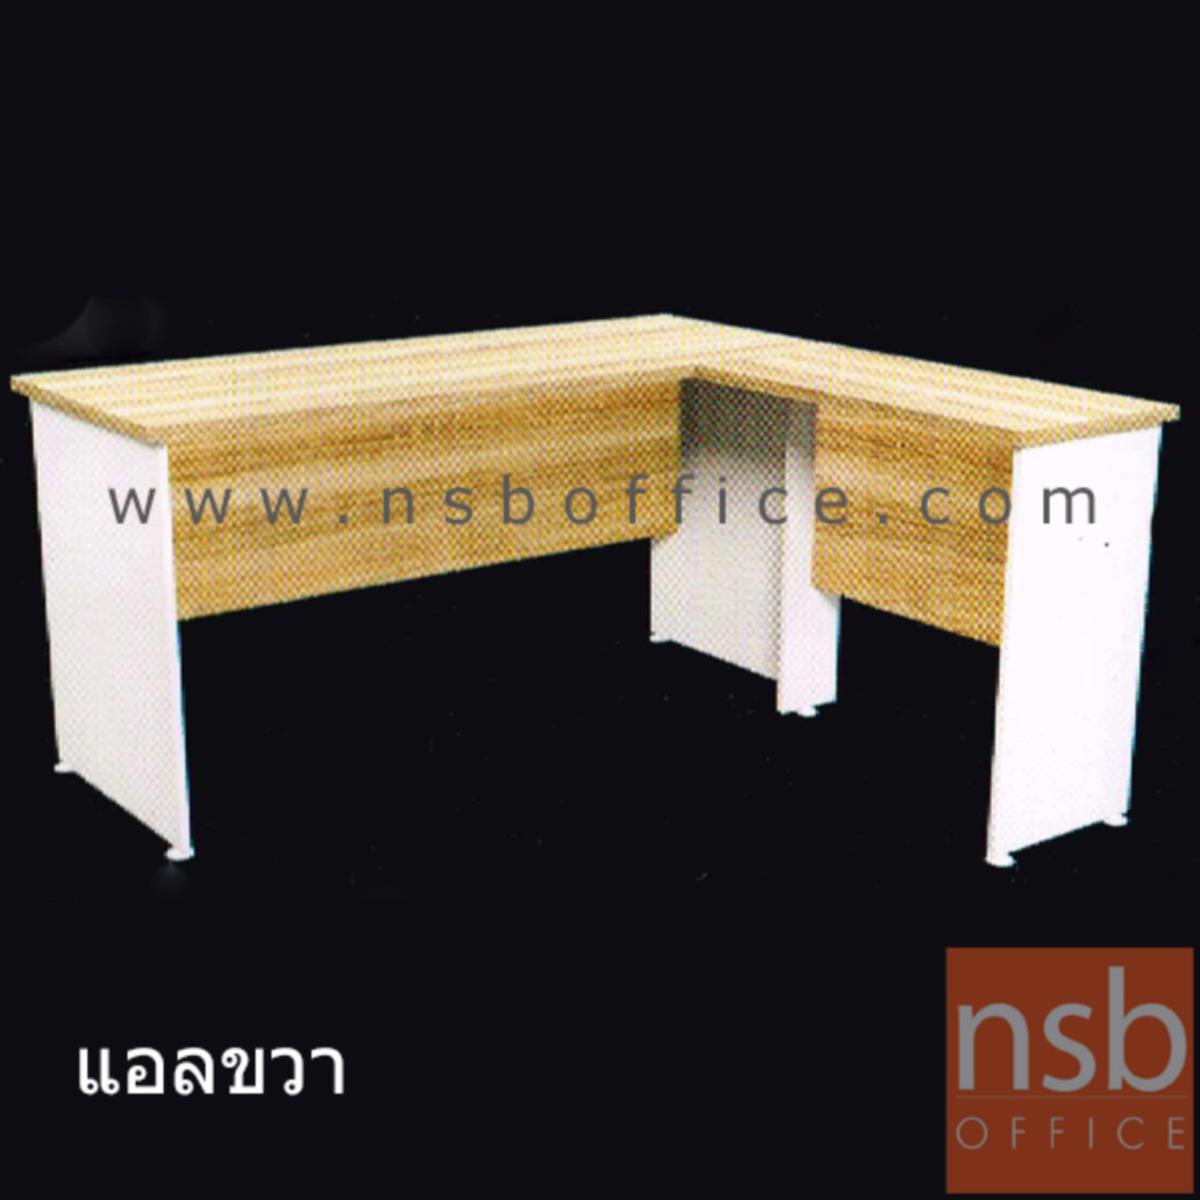 โต๊ะทำงานทรงตัวแอล  รุ่น SR-N15 ขนาด 150W cm. เมลามีน สีเนเจอร์ทีค-ขาว